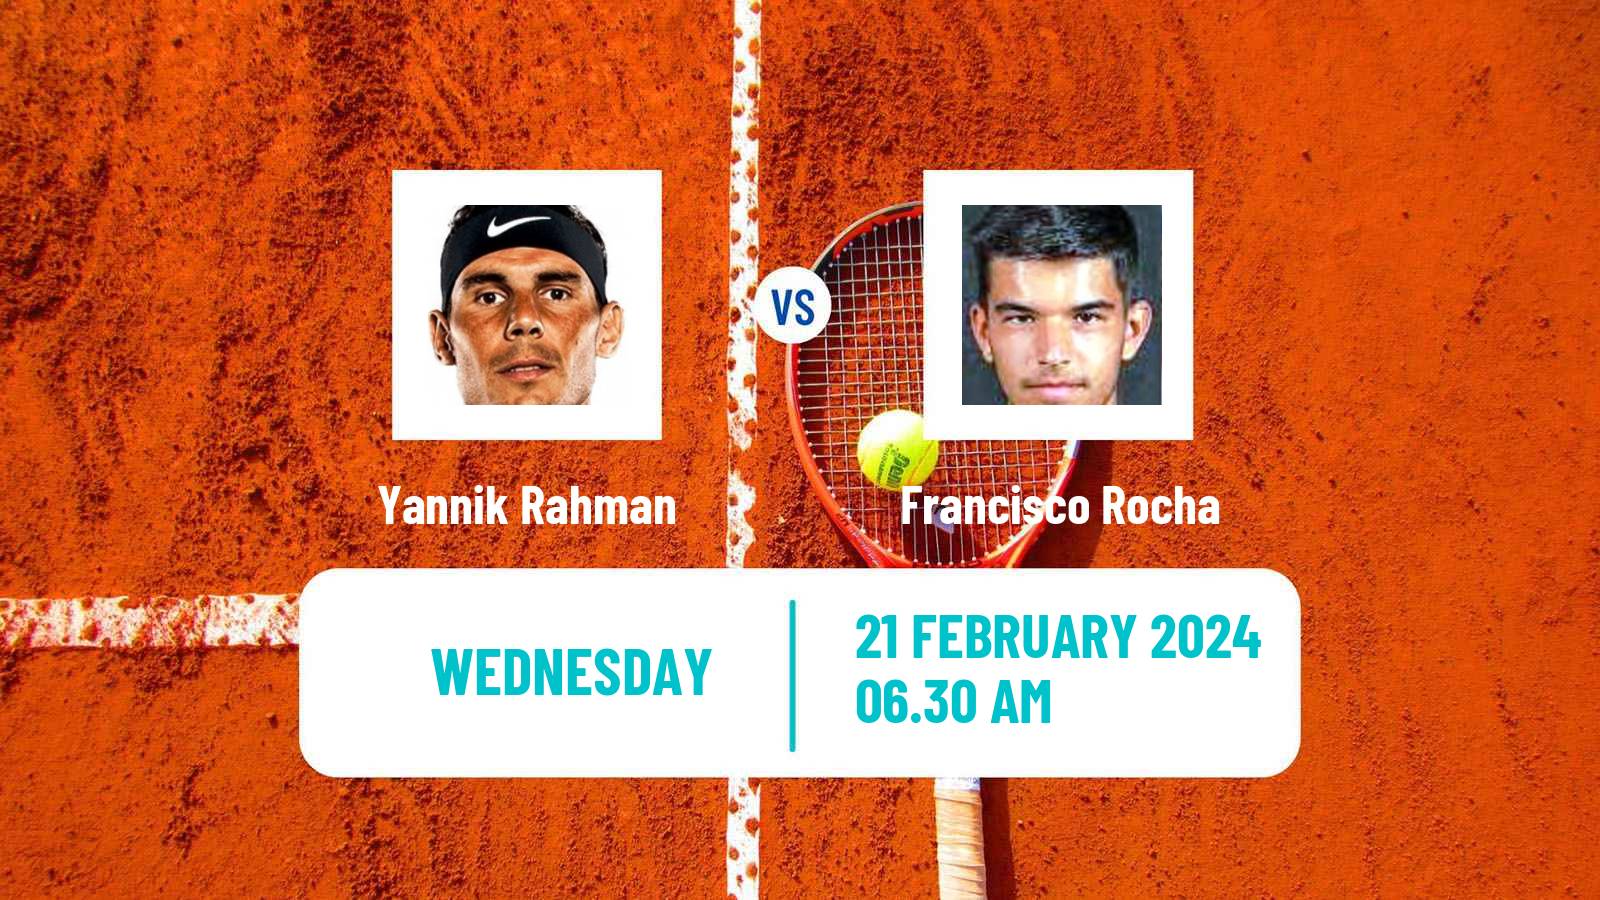 Tennis ITF M25 Vila Real De Santo Antonio 2 Men Yannik Rahman - Francisco Rocha